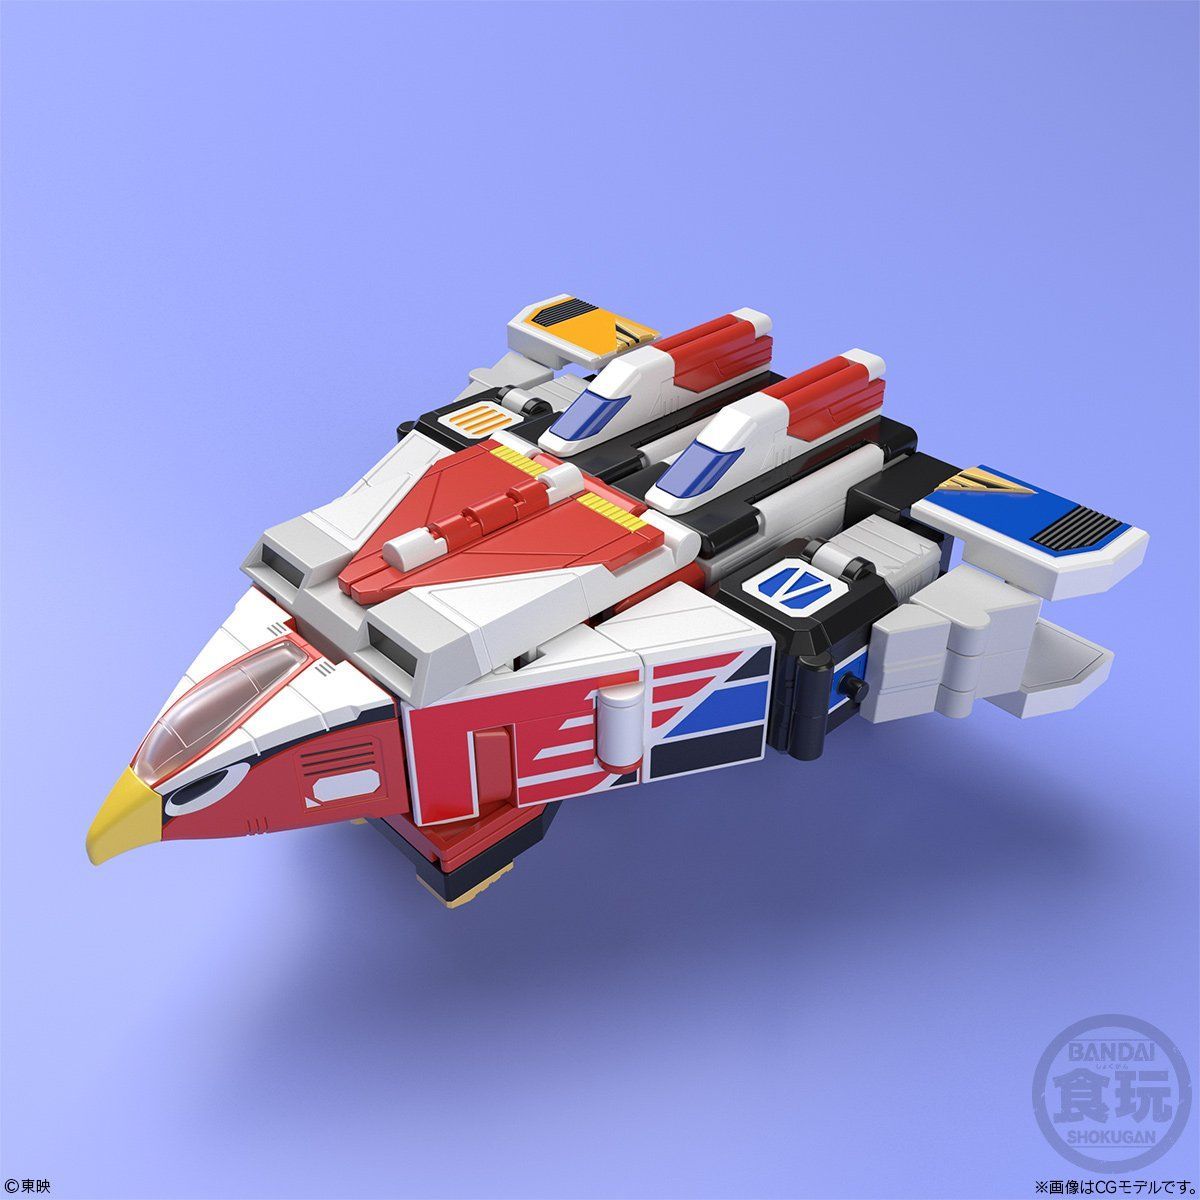 Super Minipla Jet Icarus (Reissue)